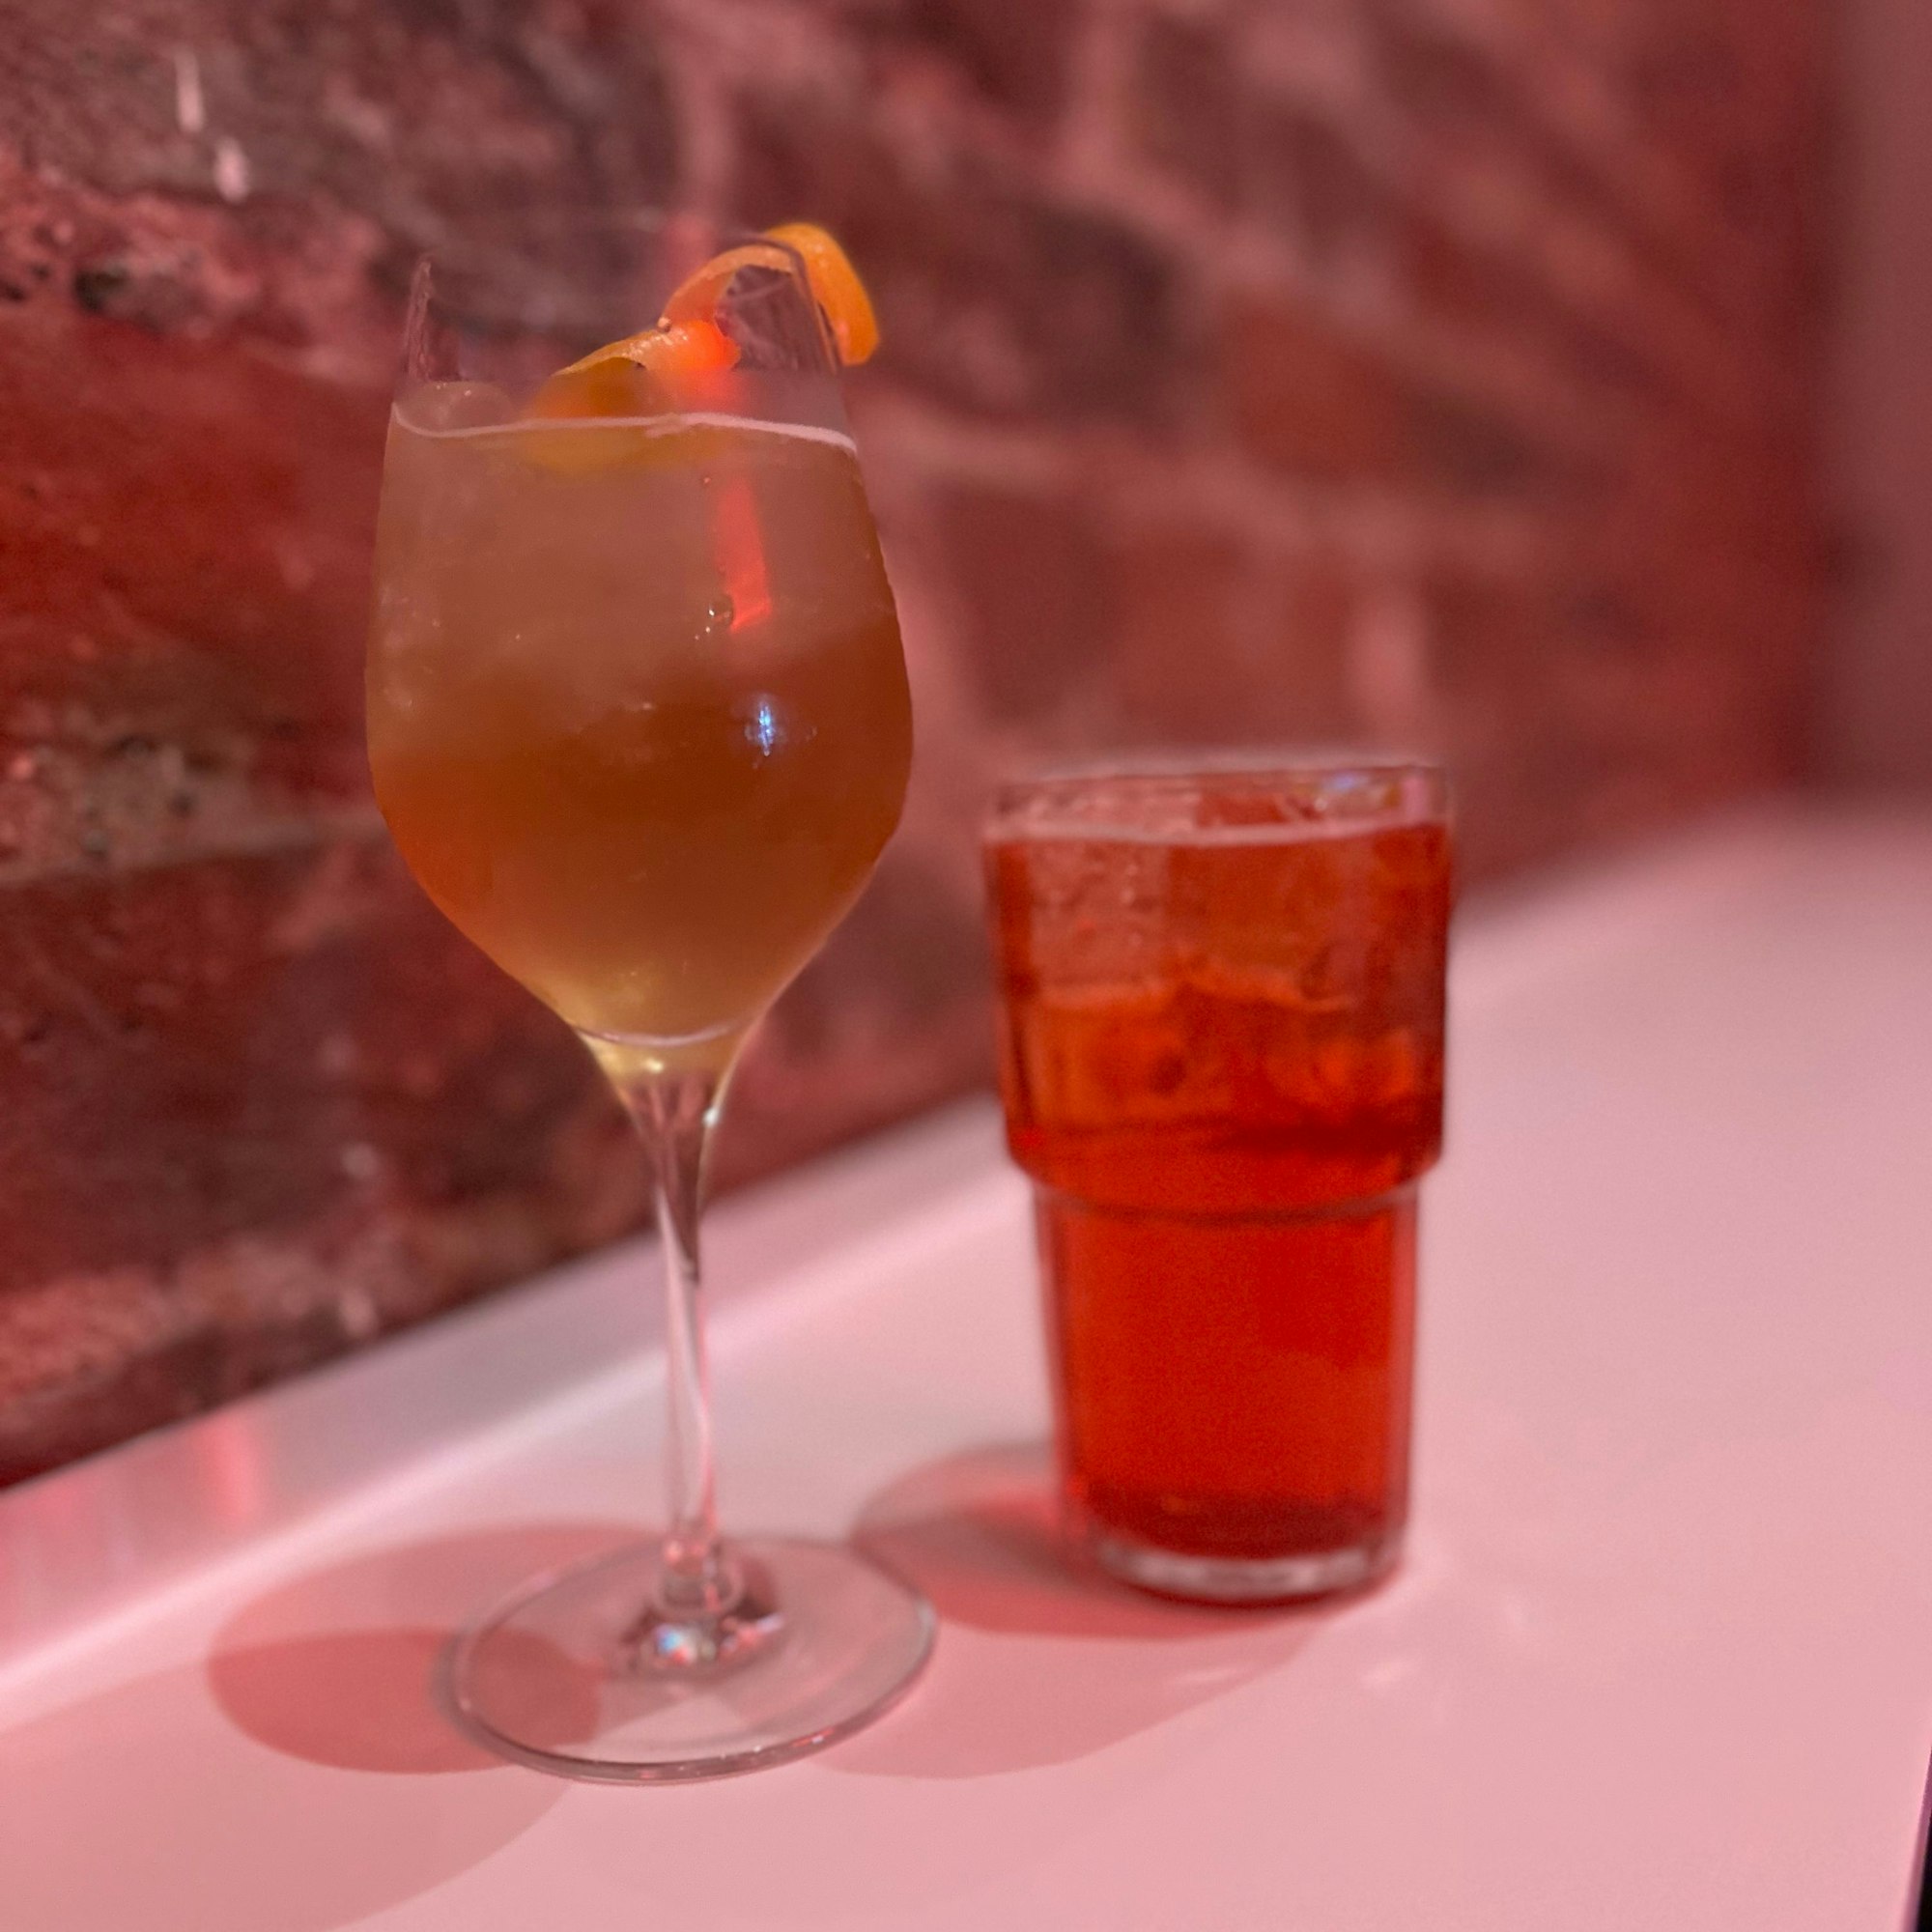 Ein Weiglas mit einem Longdrink in Orange und ein Glas mit einem roten Longdrink vor einr Ziegelwand